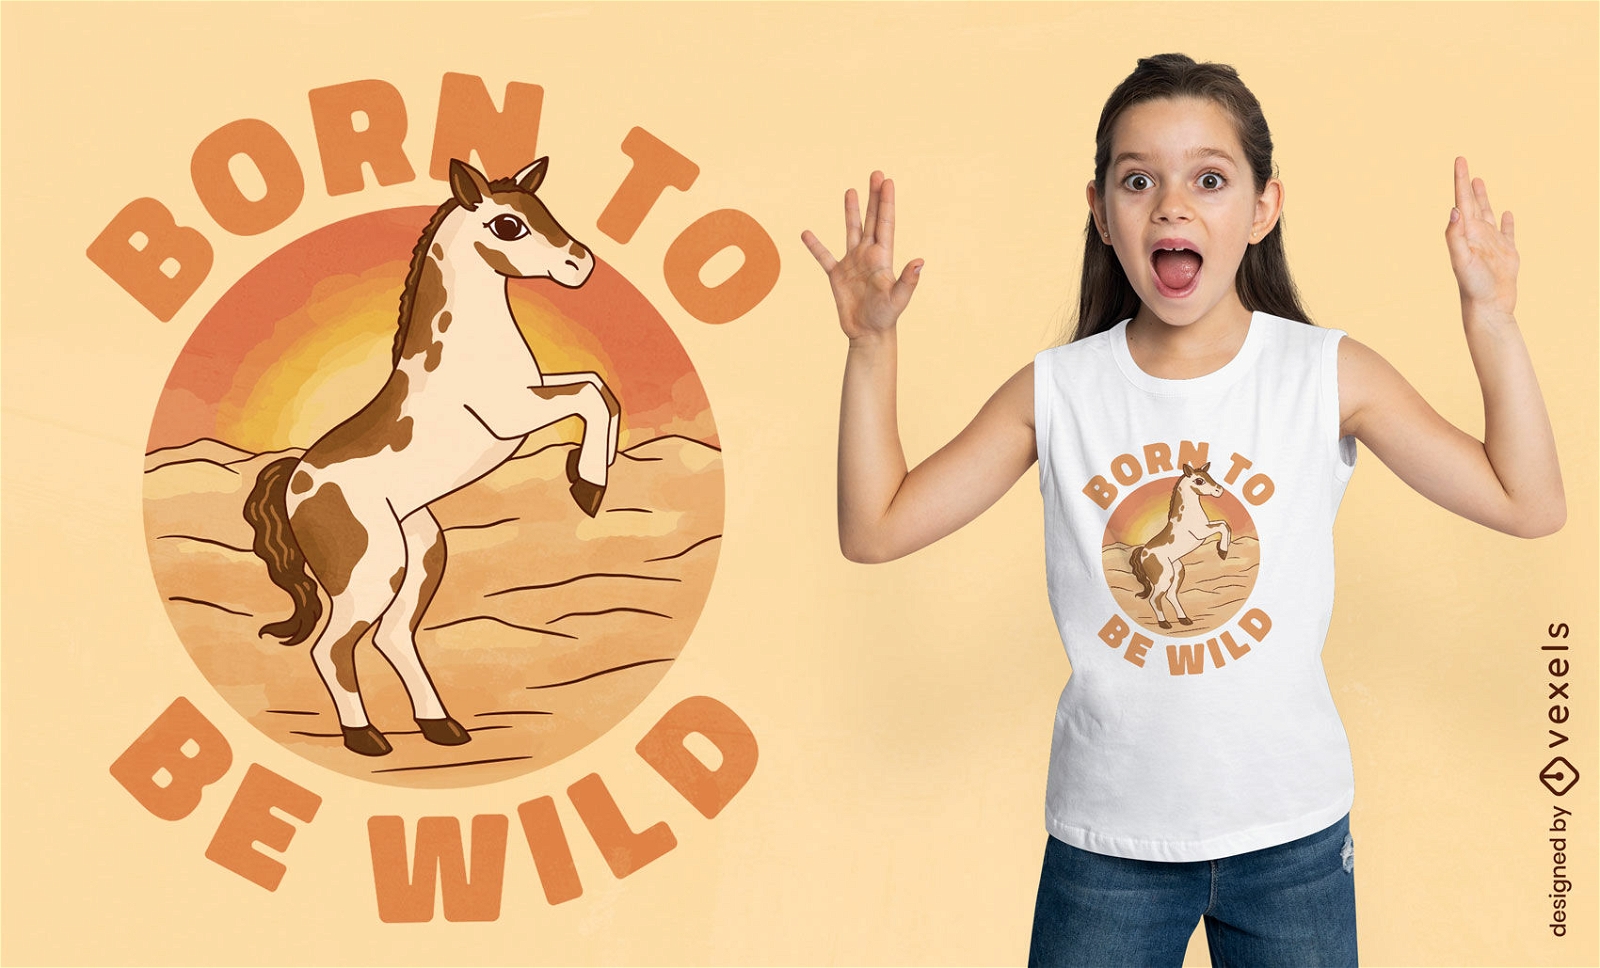 Wild baby horse t-shirt design